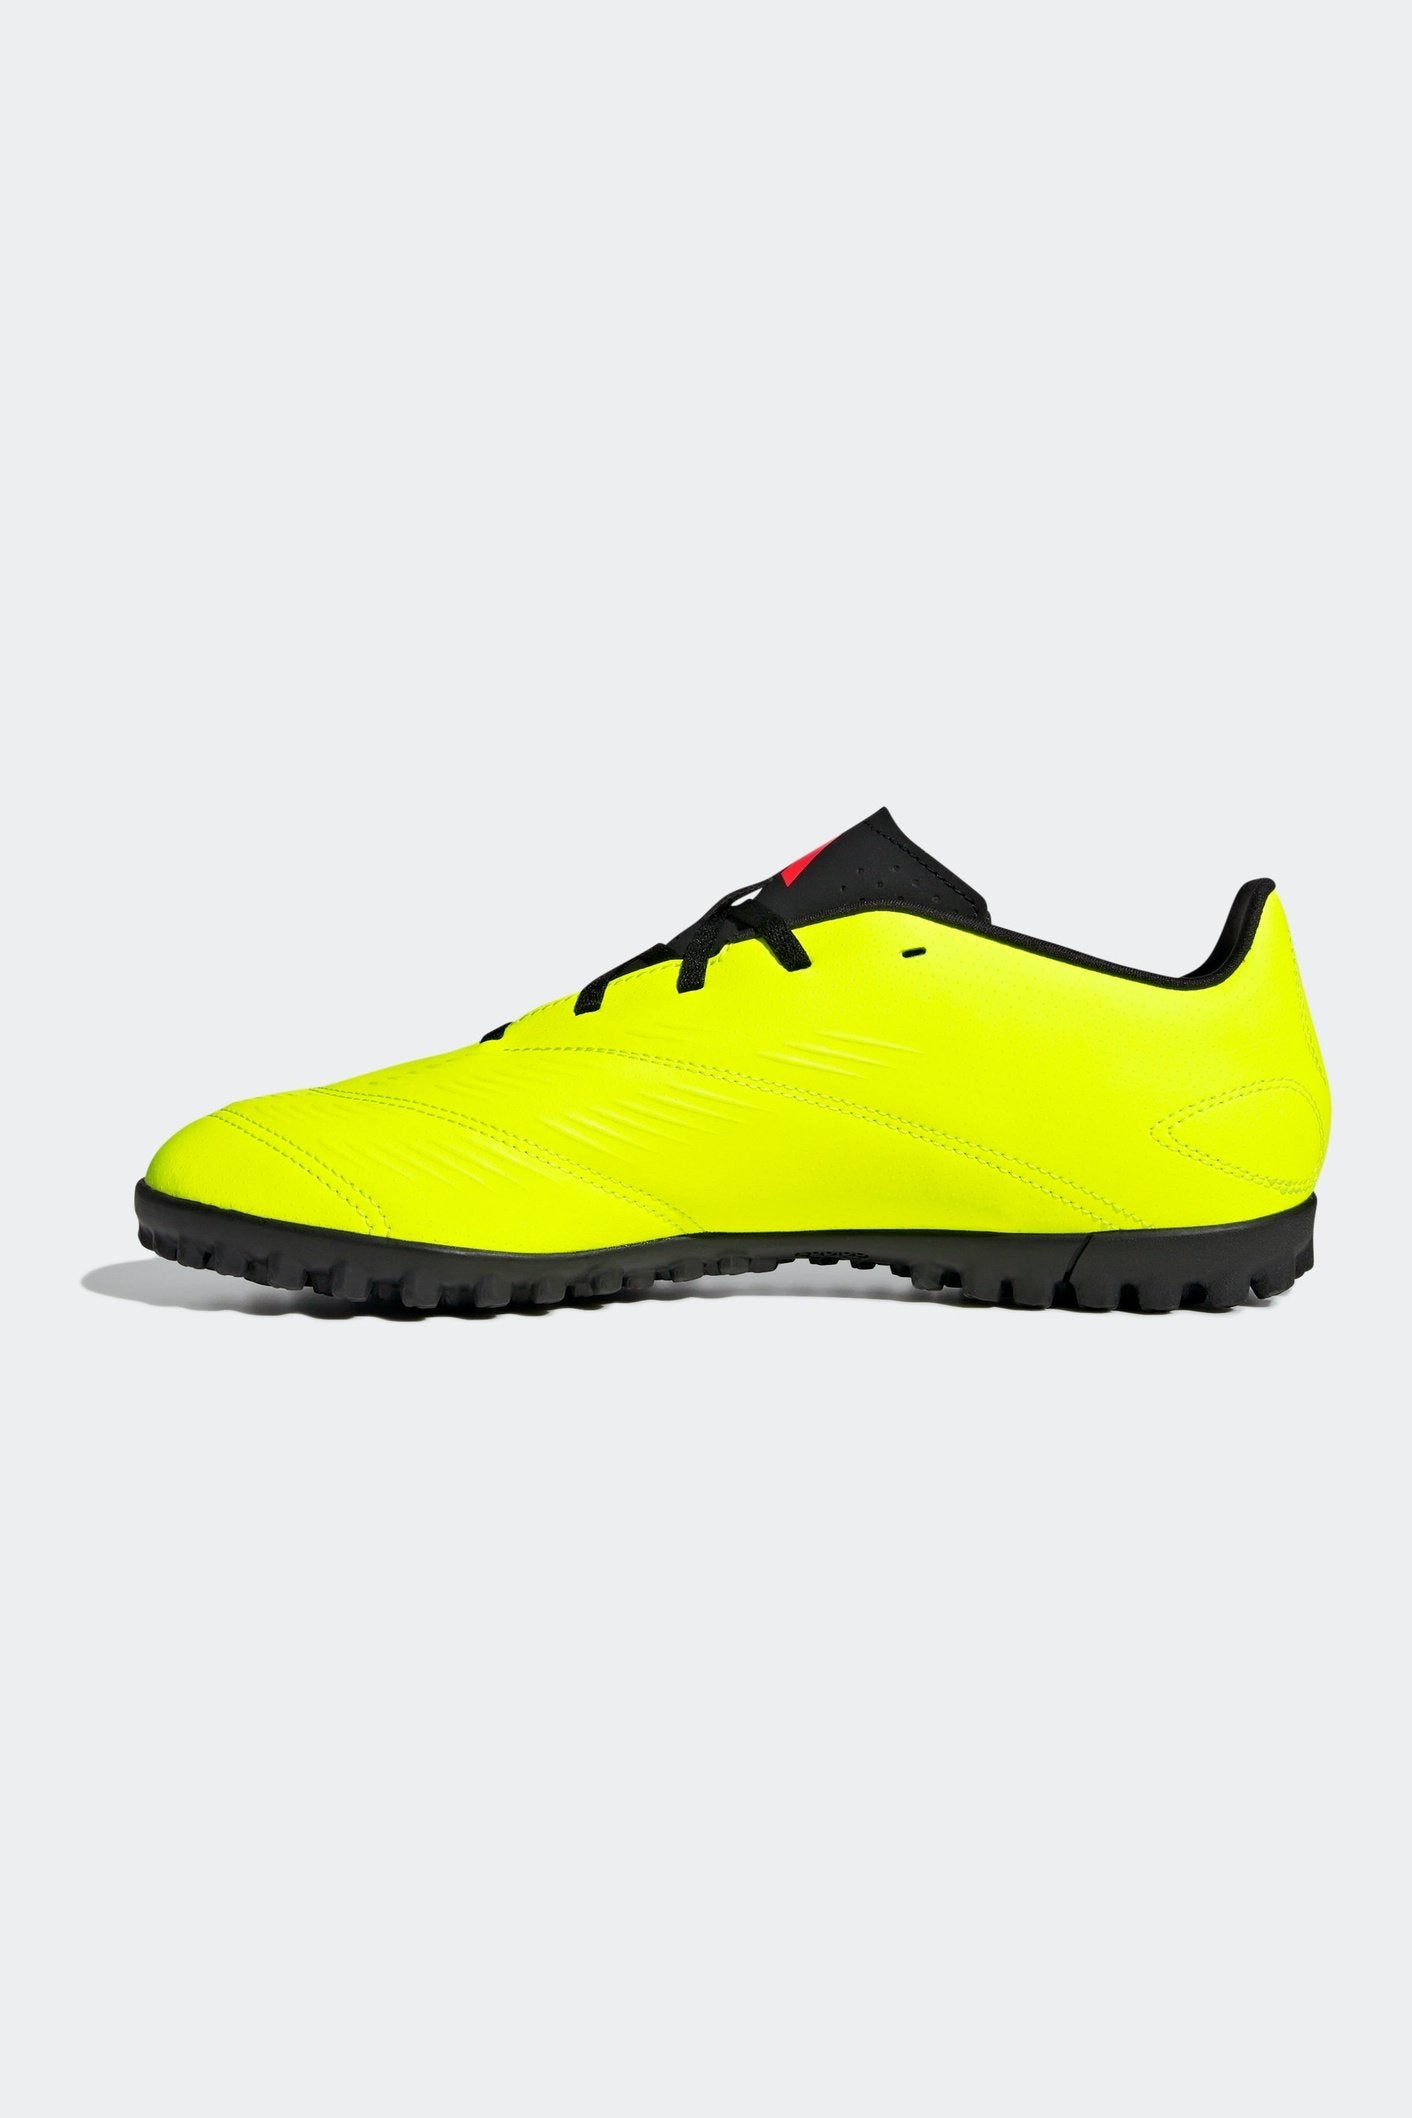 נעלי קטרגל לגברים PREDATOR CLUB TURF בצבע צהוב זוהר ושחור